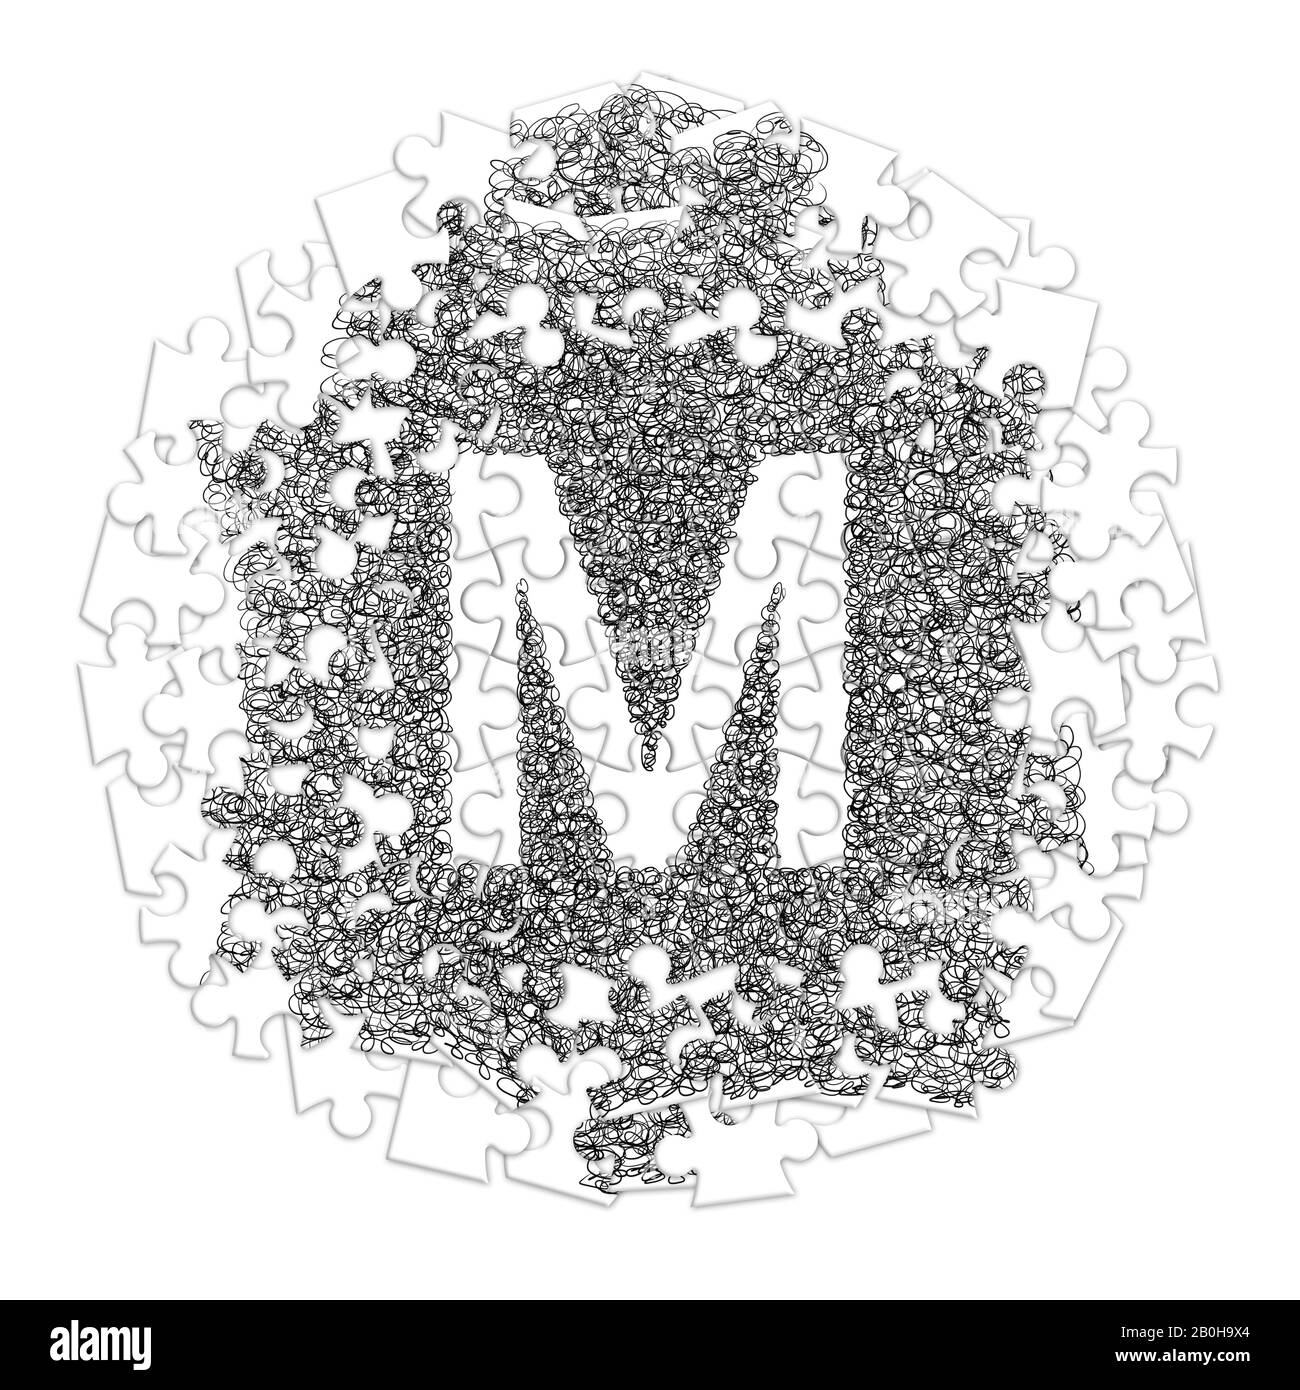 Lettre M. police faite À La Main dessinée avec un stylo graphique sur fond blanc en forme de puzzle Banque D'Images